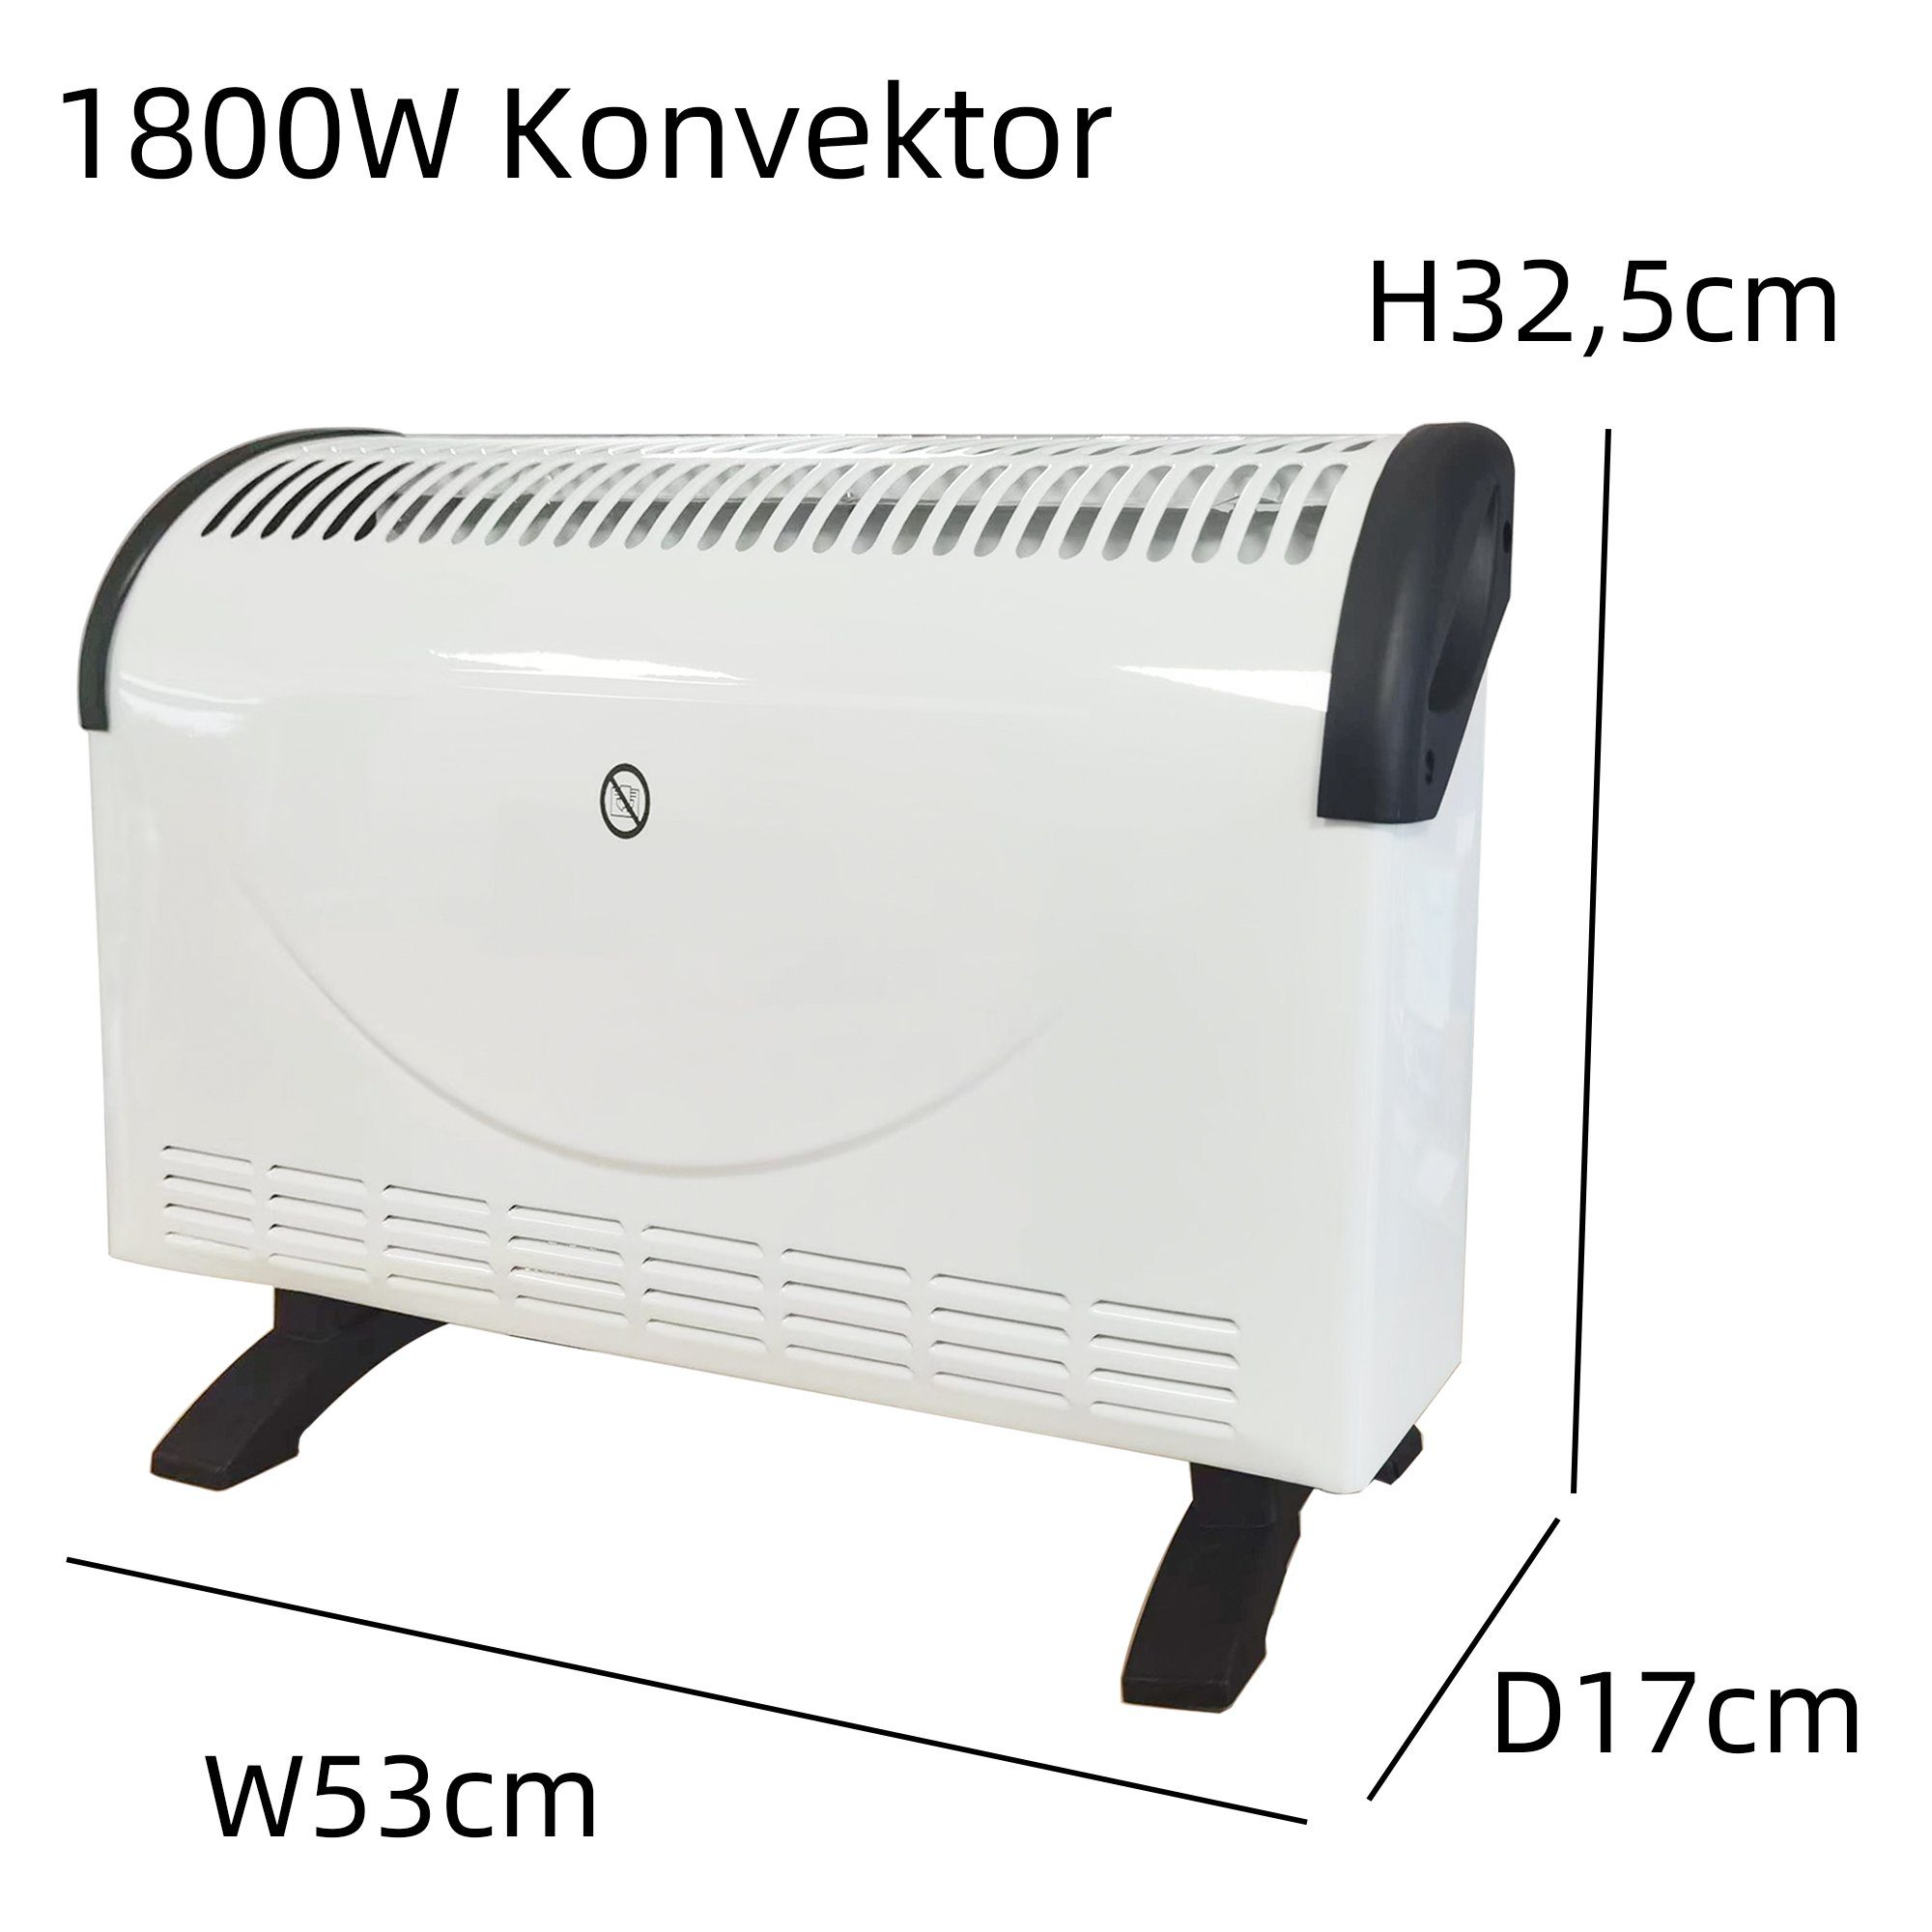 1800 Stufen mit home 3 Heizlüfter W W, style 750/1050/1800 Konvektor Thermostat (Weiß) Elektroheizer Heizgerät,